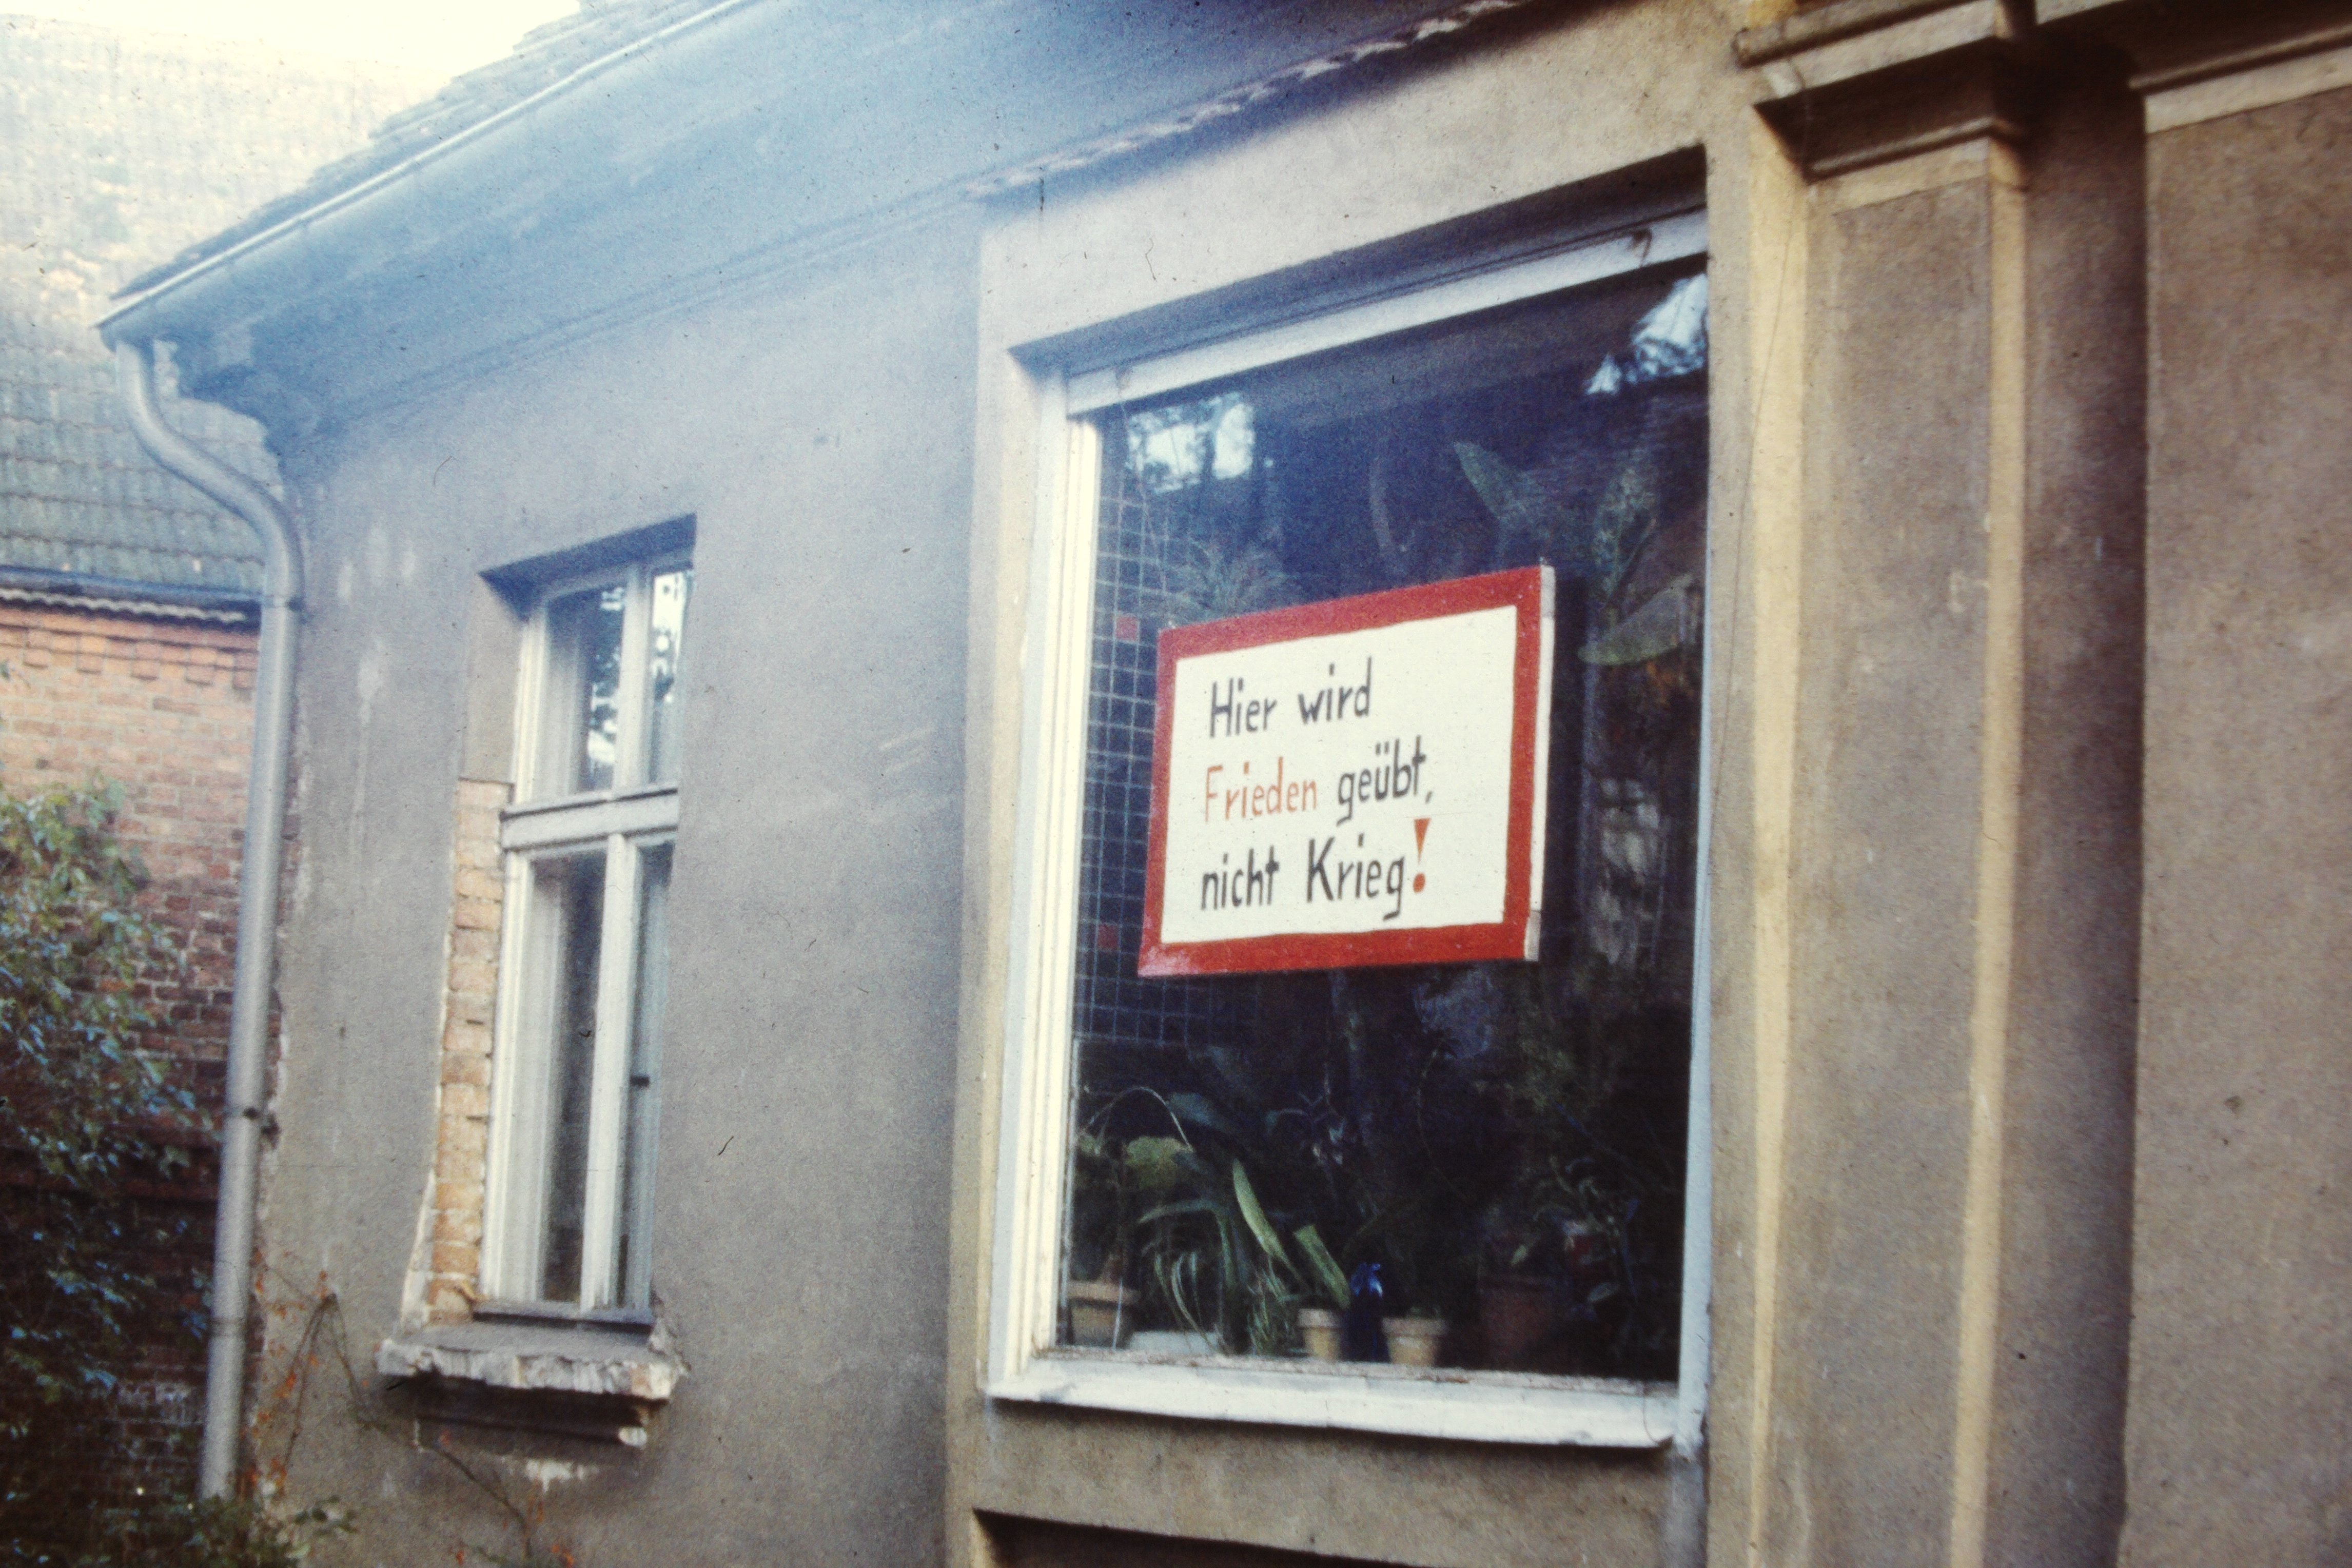 Atomschlagübung "Dosse 83": Schild mit Beschriftung: "Hier wird Frieden geübt, nicht Krieg!" am Haus der Freimarks (DDR Geschichtsmuseum im Dokumentationszentrum Perleberg CC BY-SA)